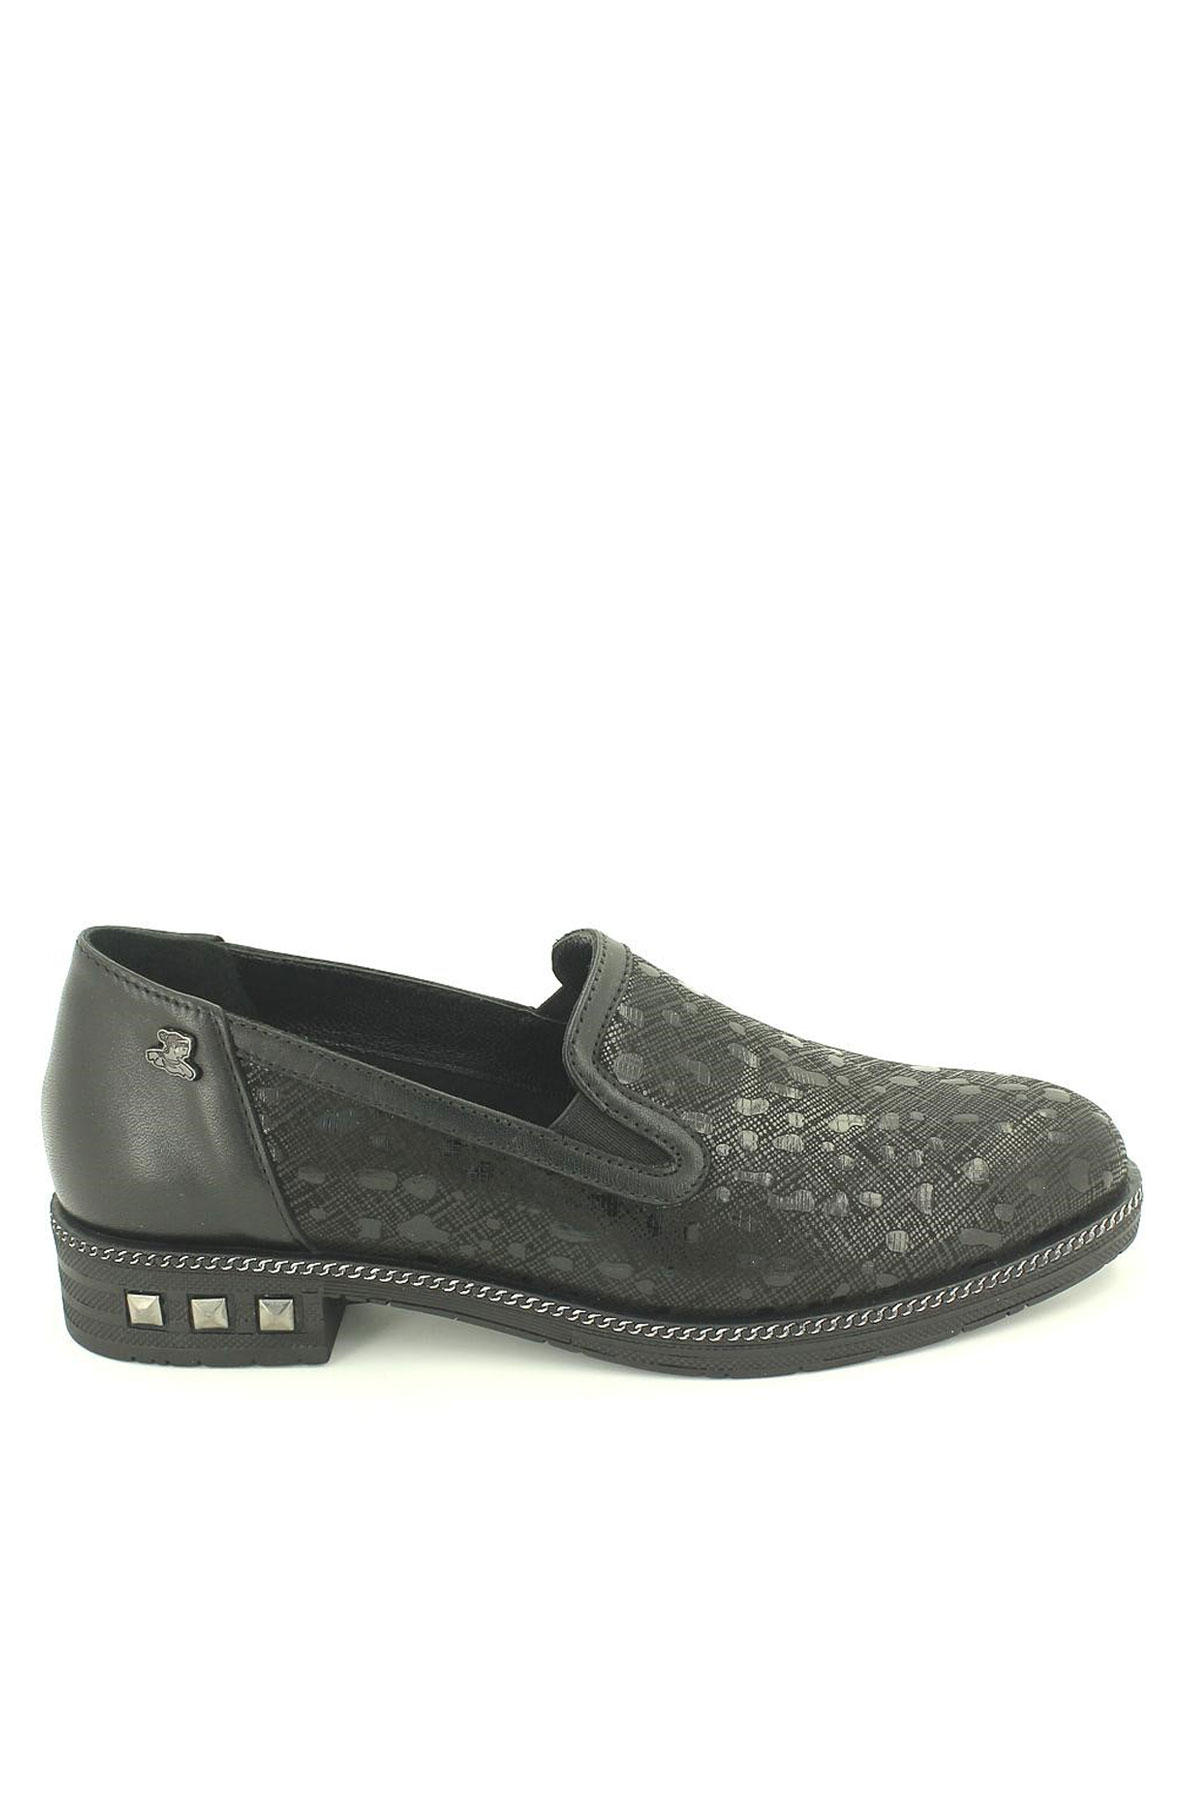 Kadın Deri Ayakkabı Siyah 2053505K - Thumbnail